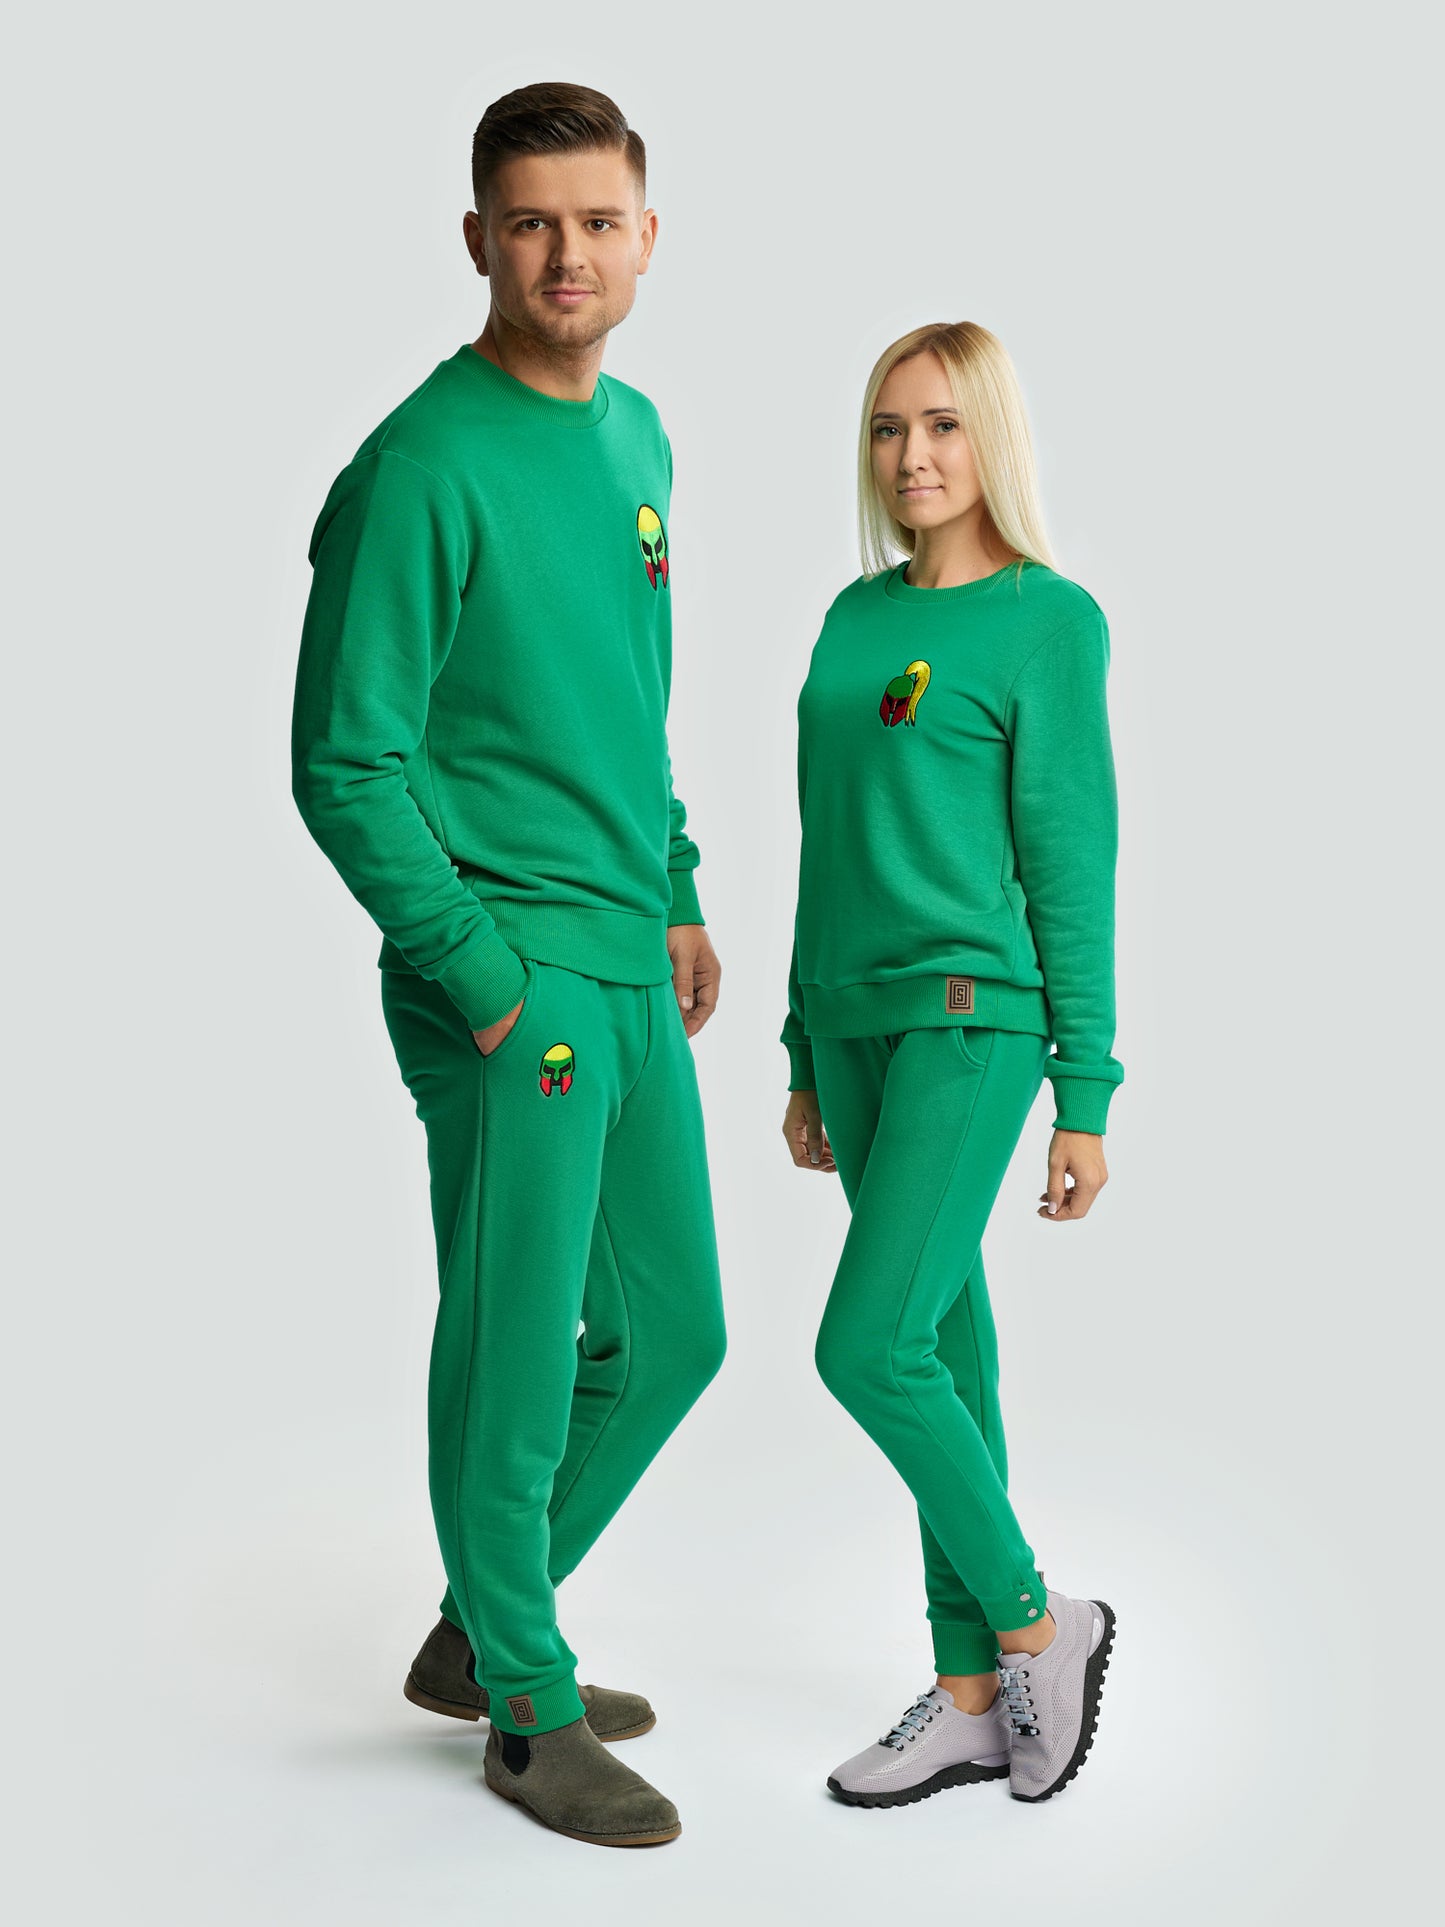 Žalias laisvalaikio kostiumas vyrams "Los Lituanos" su siuvinėta trispalve - Losmados